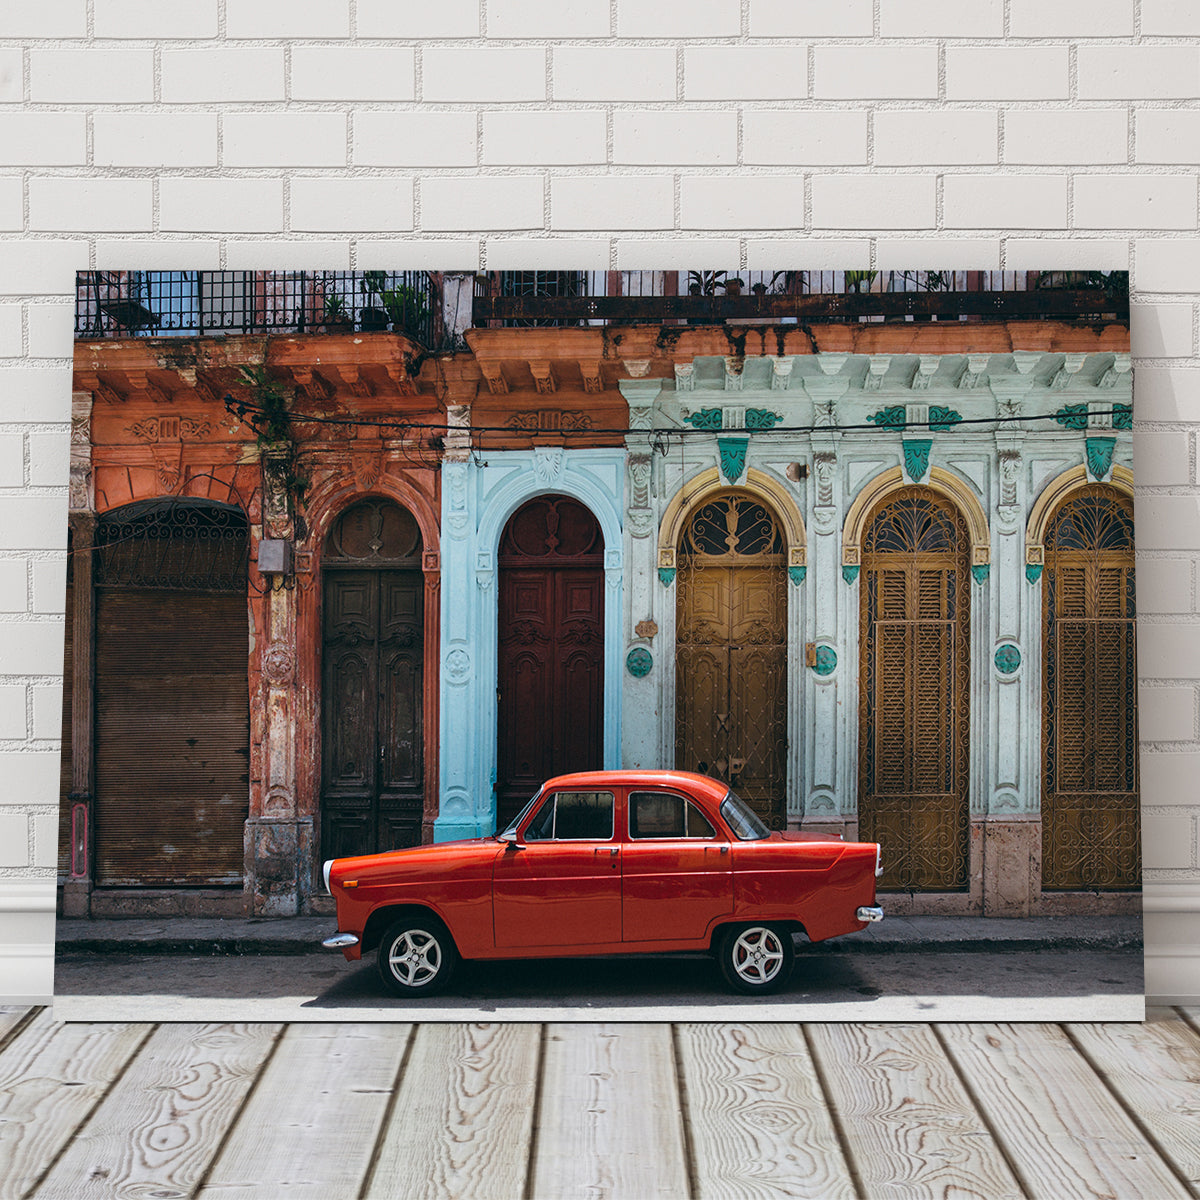 Red Car in Cuba